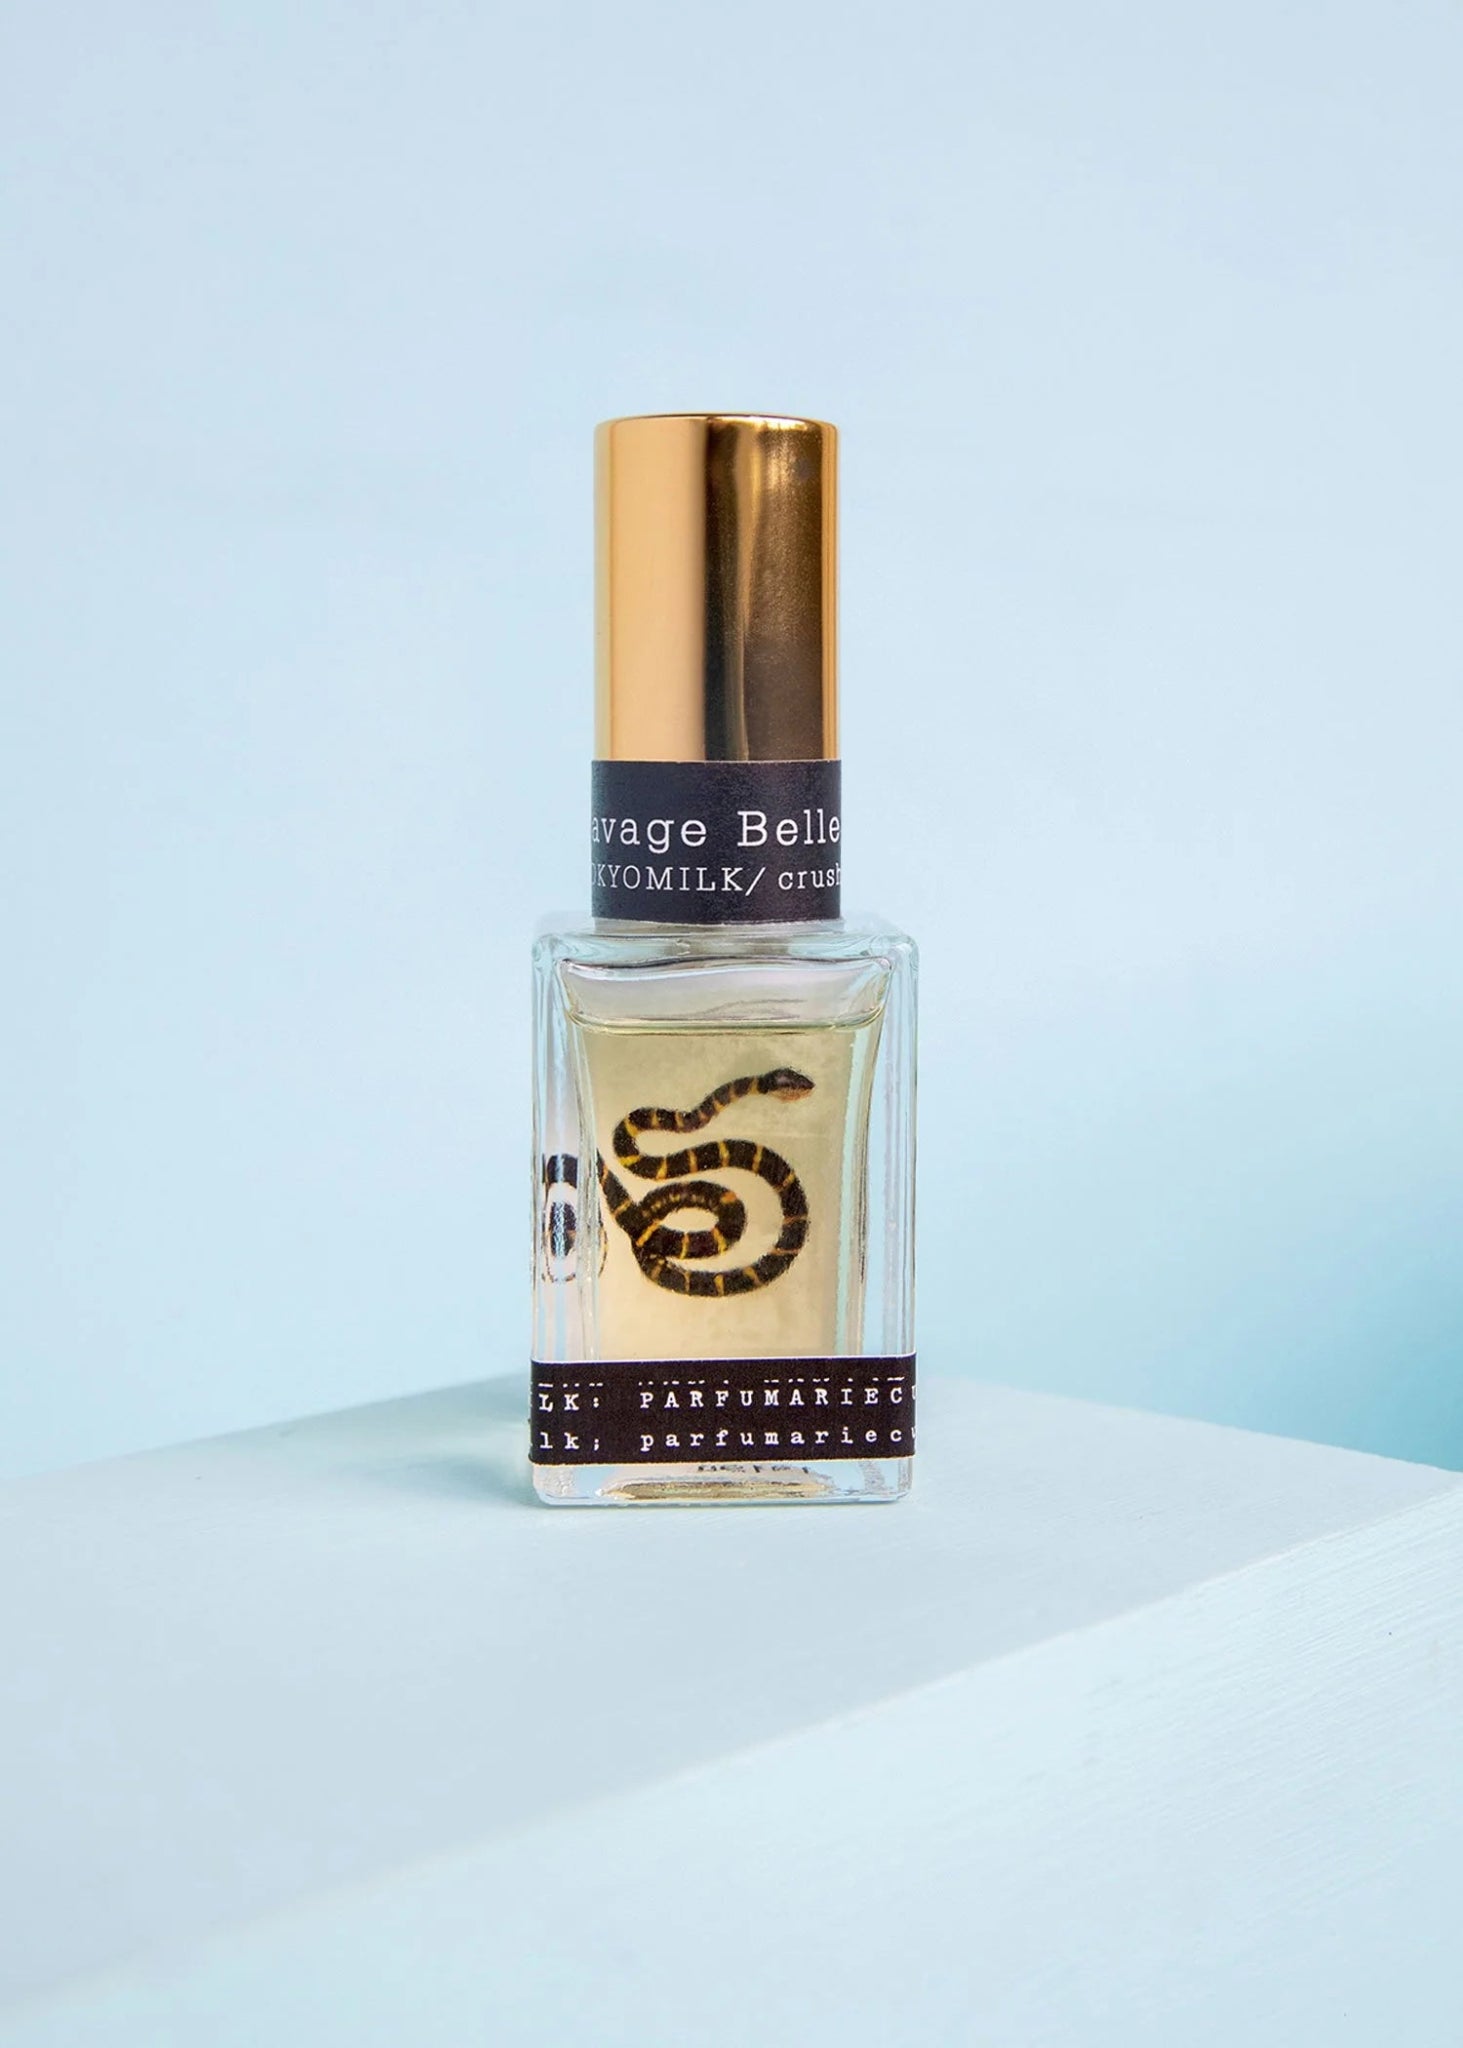 Savage Belle No. 68 Parfum - TokyoMilk - Nocturne LLC